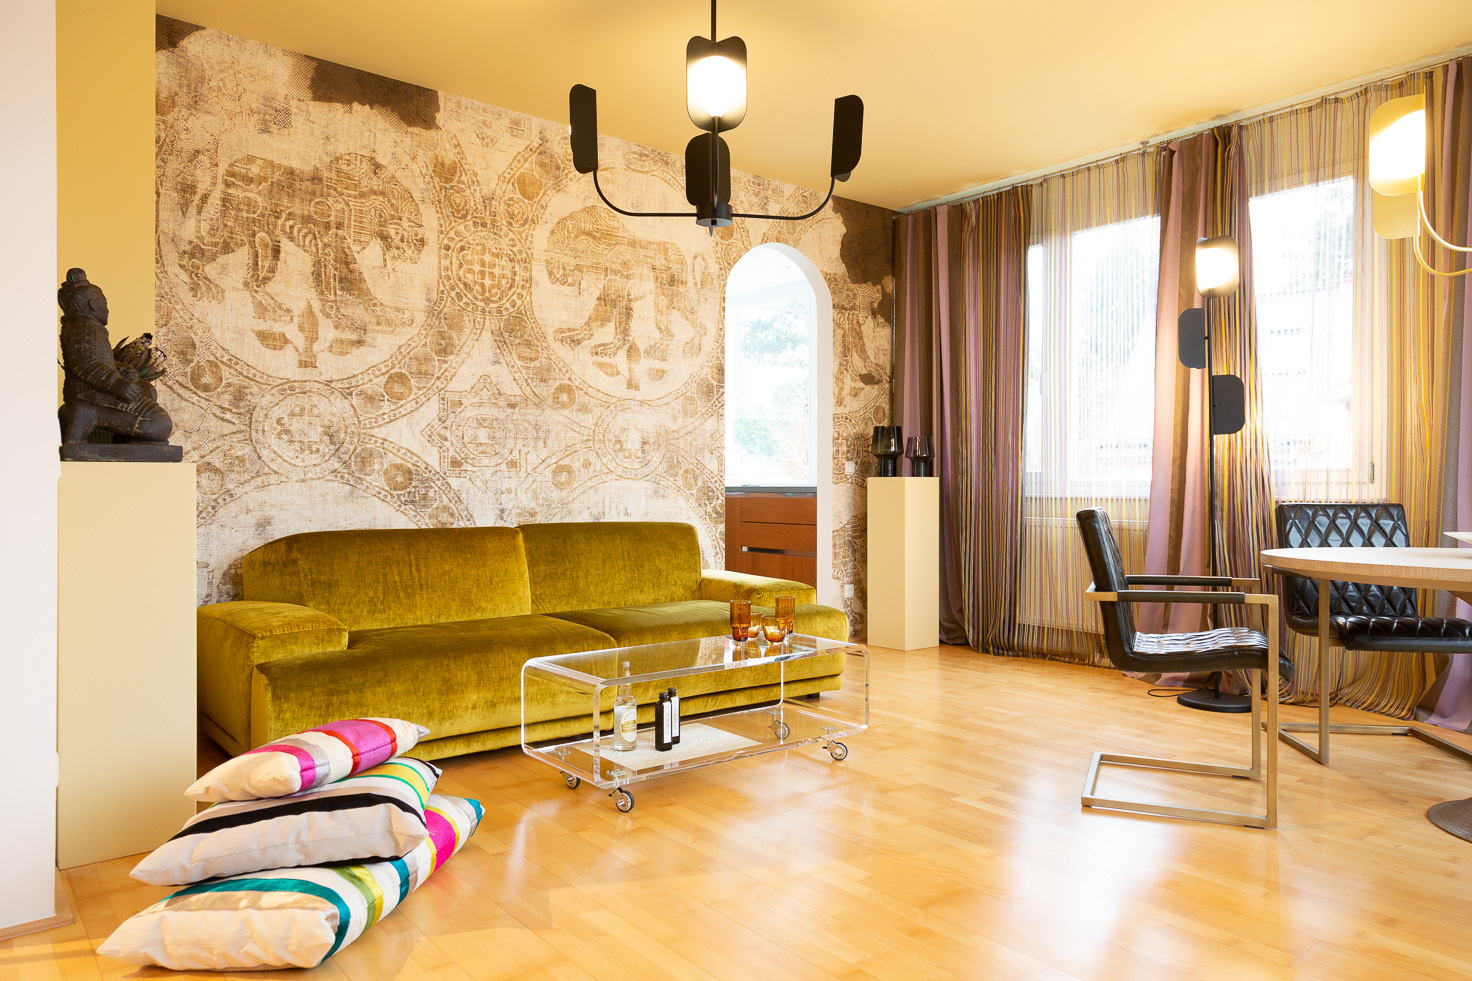 Wohnzimmer mit Interior Design in Gelb- und Ockertönen, Wallpepper Tapete mit Großkatzenmotiv, Asiatische Dekorationselemente und ausgefallenen Deckenlampen von MM Lampadari.